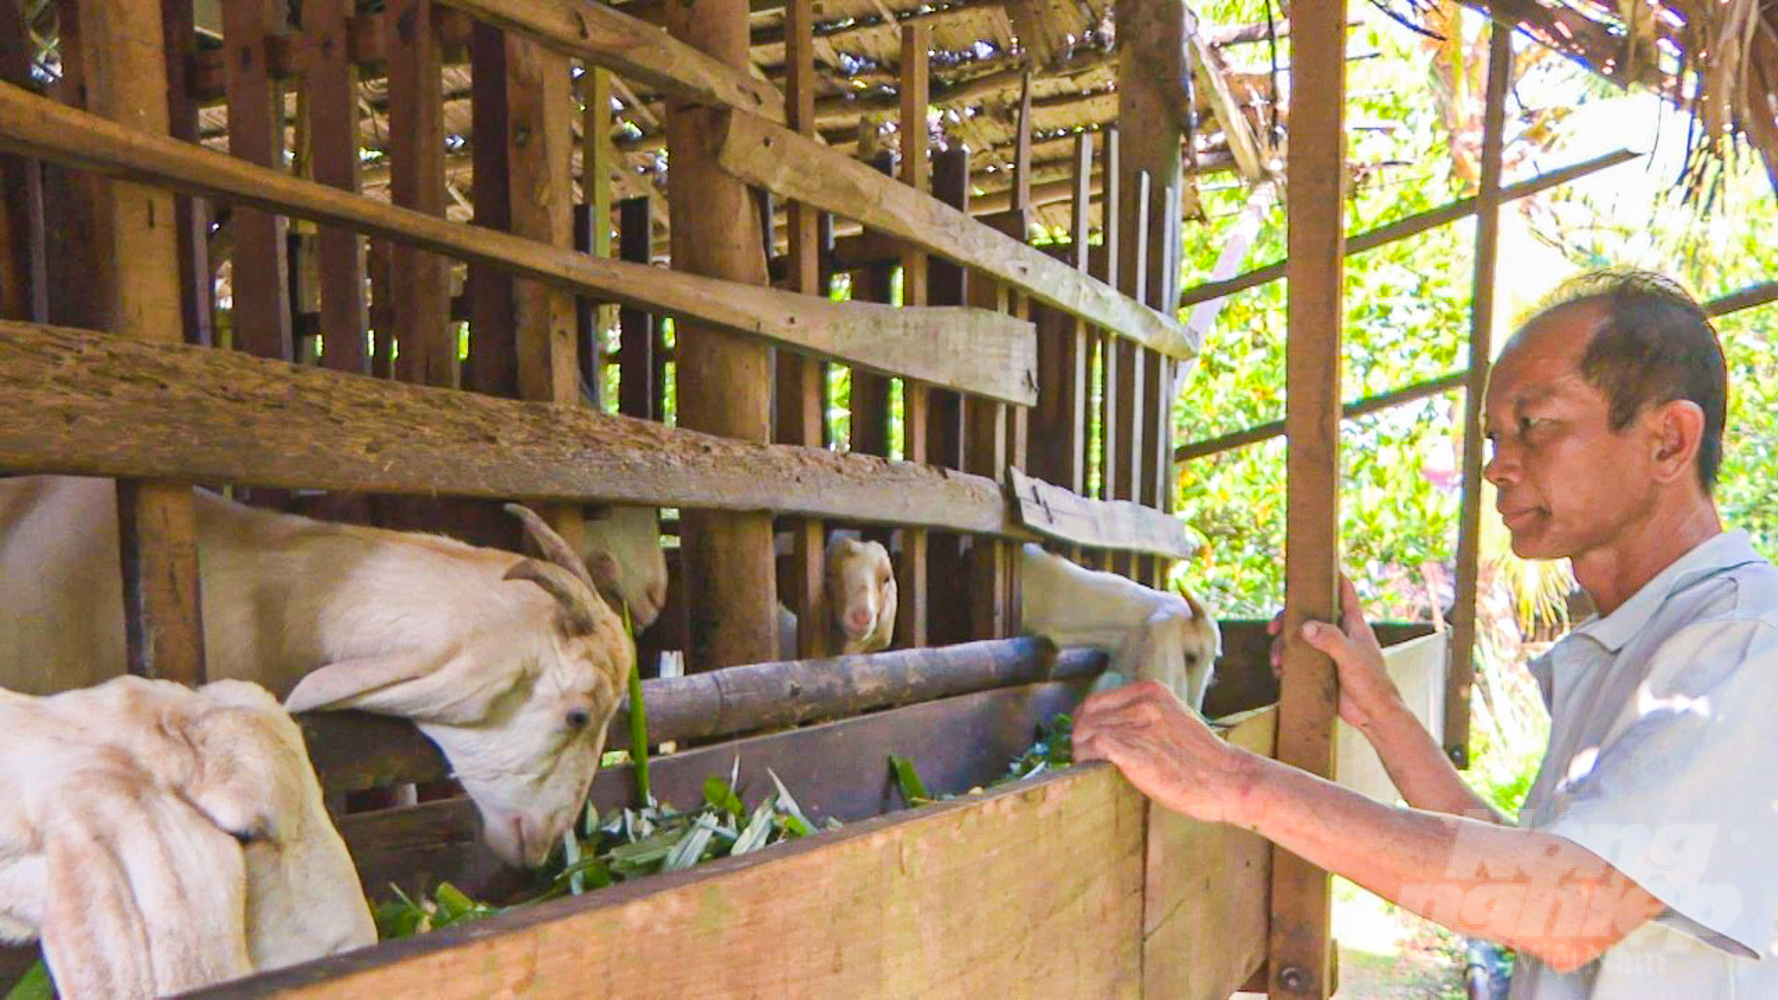 Tổng đàn dê trên địa bàn tỉnh Sóc Trăng gần 10.000 con và còn nhiều khả năng phát triển mạnh trong thời gian tới. Ảnh: Kim Anh.